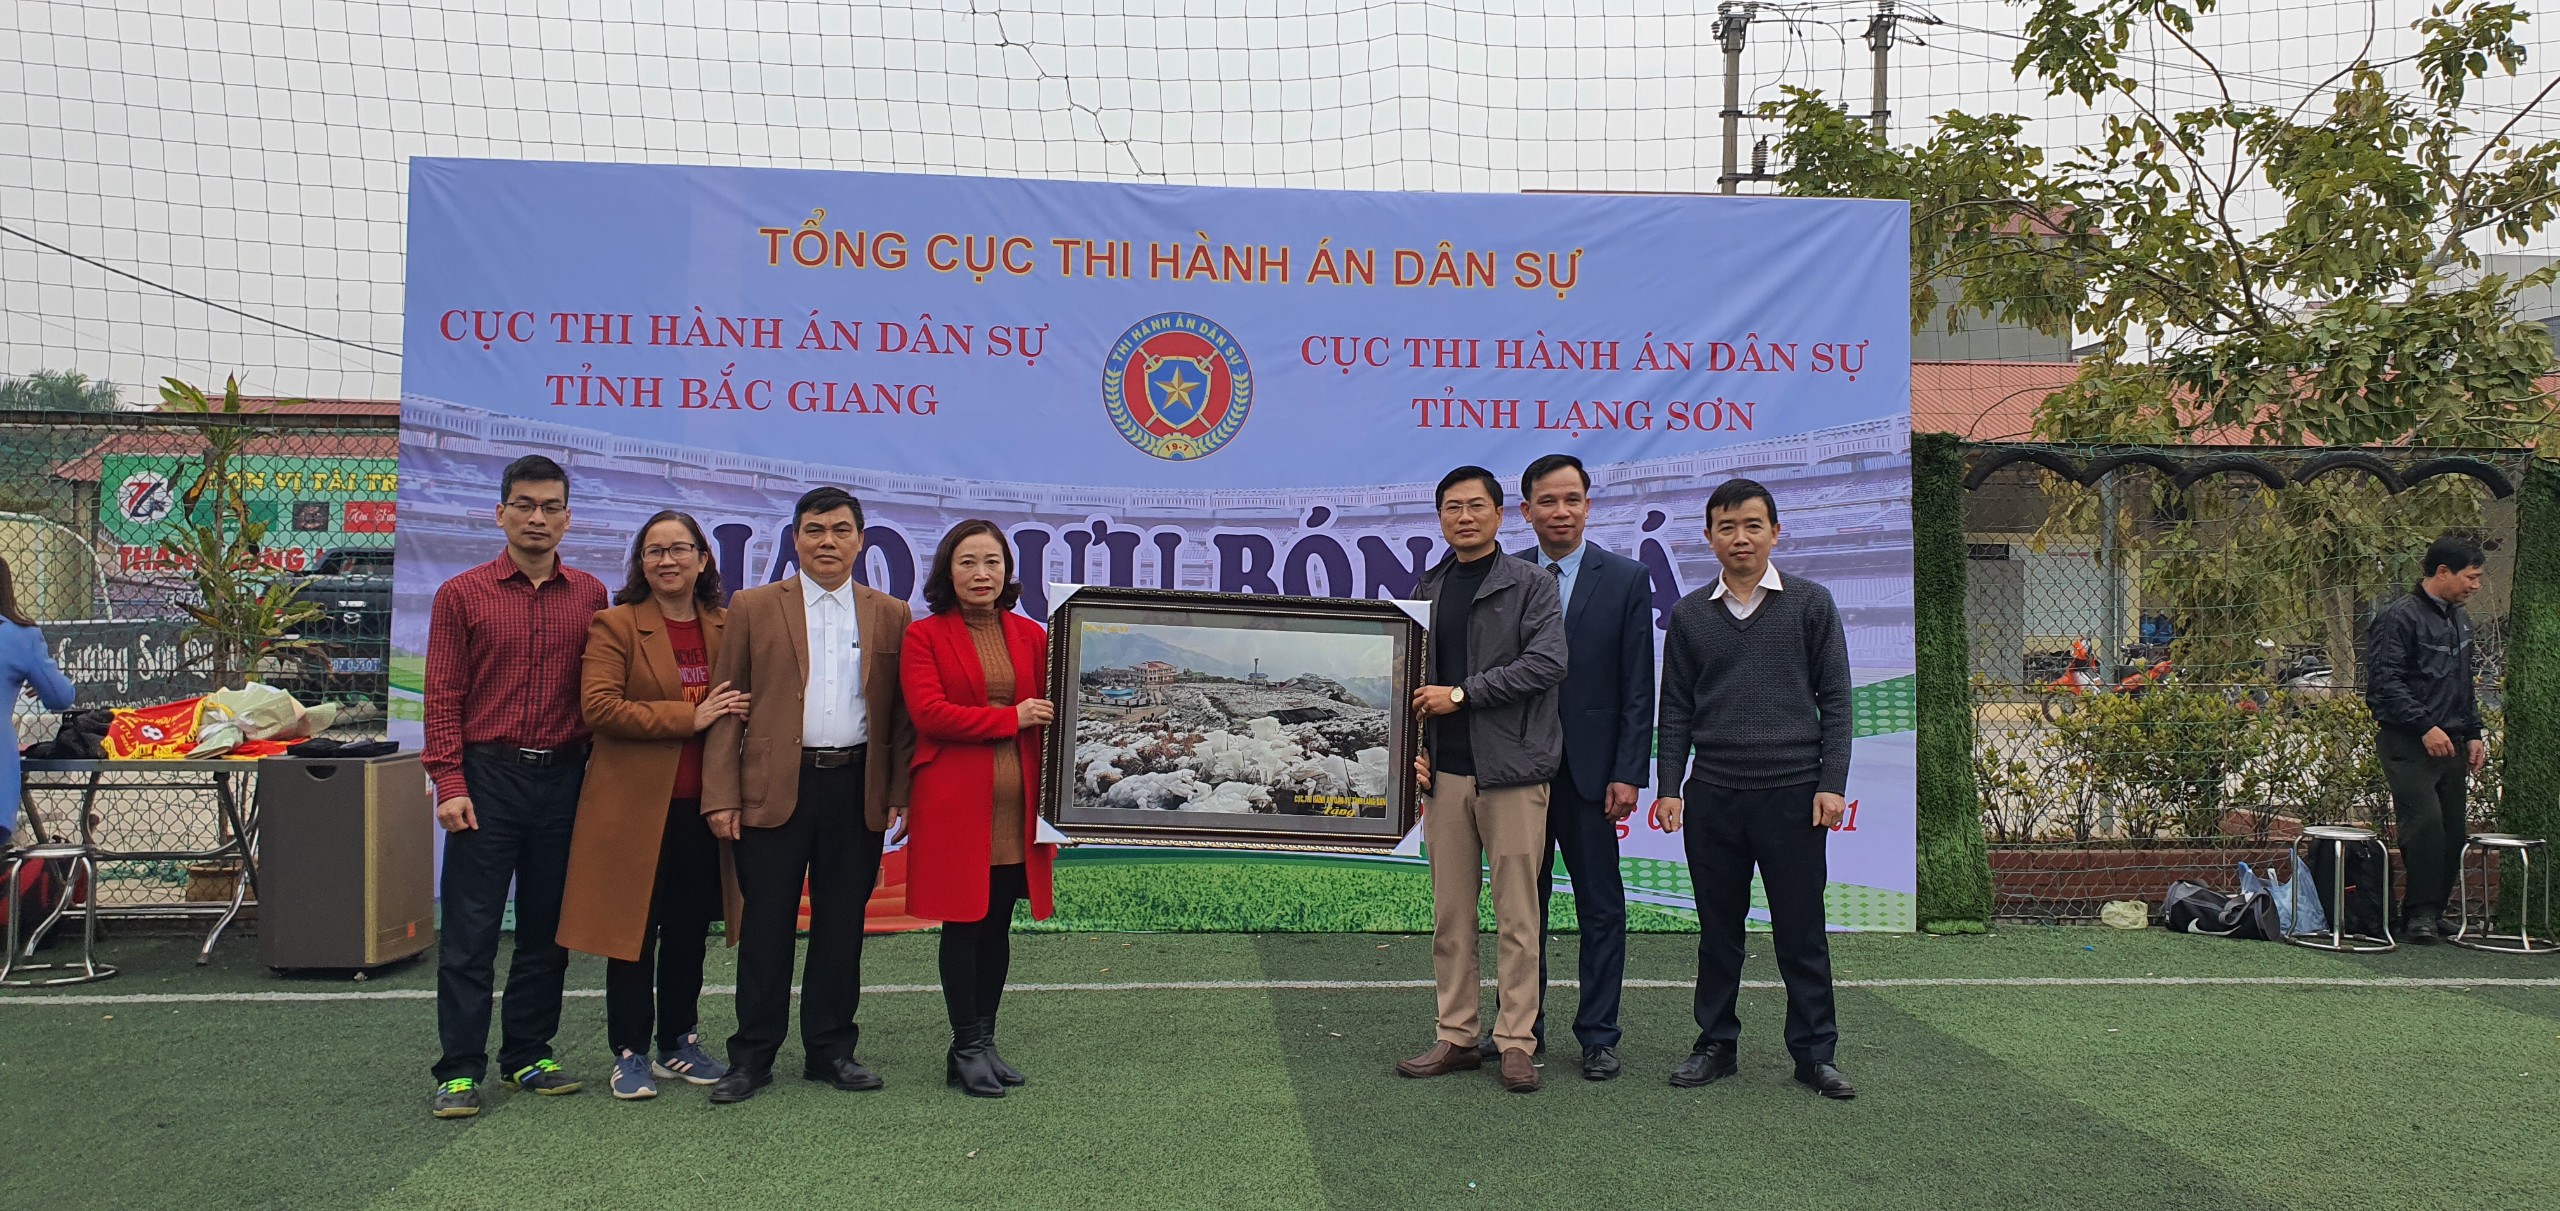 Giao lưu, học tập kinh nghiệm trong công tác thi hành án dân sự và giao hữu bóng đá giữa Cục Thi hành án dân sự tỉnh Bắc Giang và Cục thi hành án dân sự tỉnh Lạng Sơn